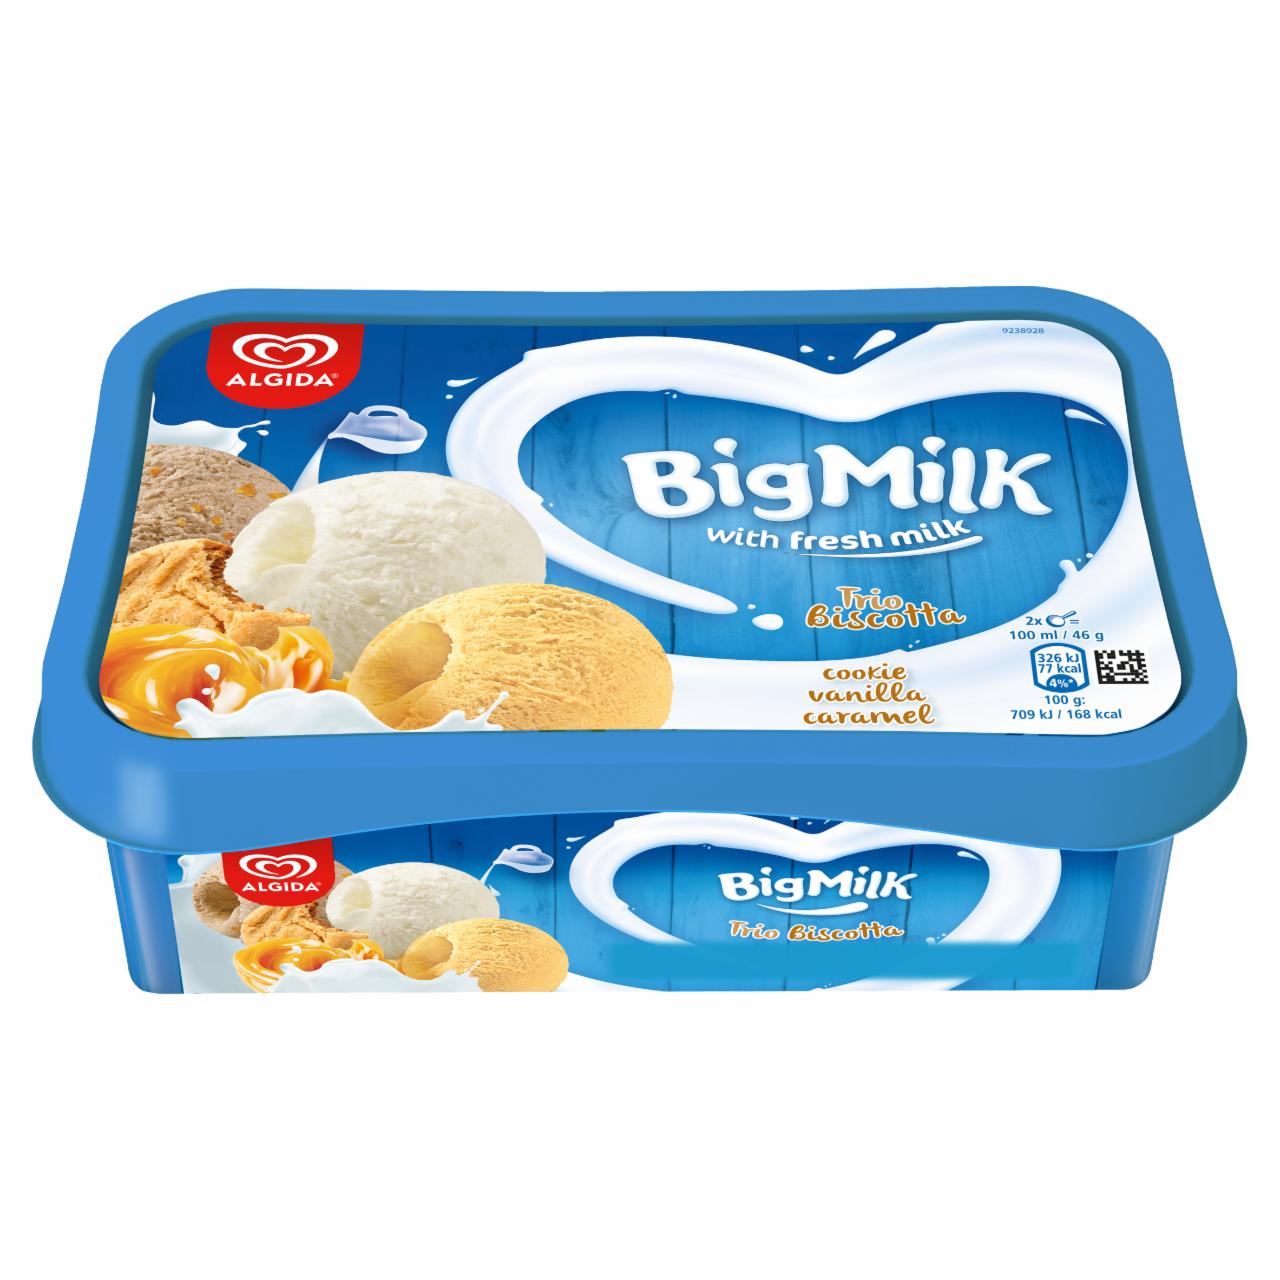 Képek - Big Milk karamell ízű jégkrém, vanília-tejszín ízű jégkrém és keksz ízű jégkrém 1000 ml